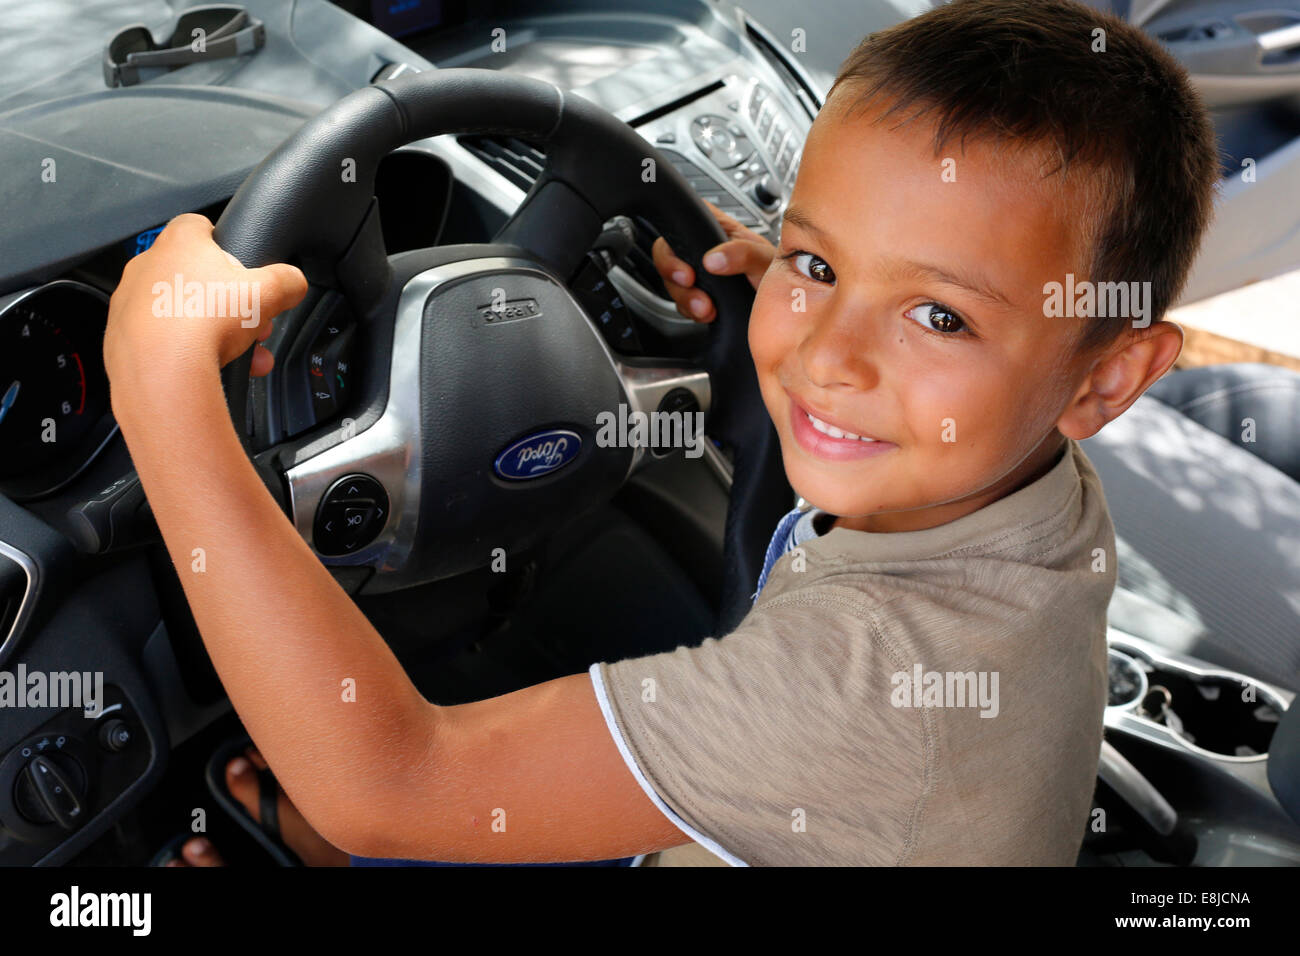 Garçon de 6 ans fait semblant de conduire une voiture Banque D'Images